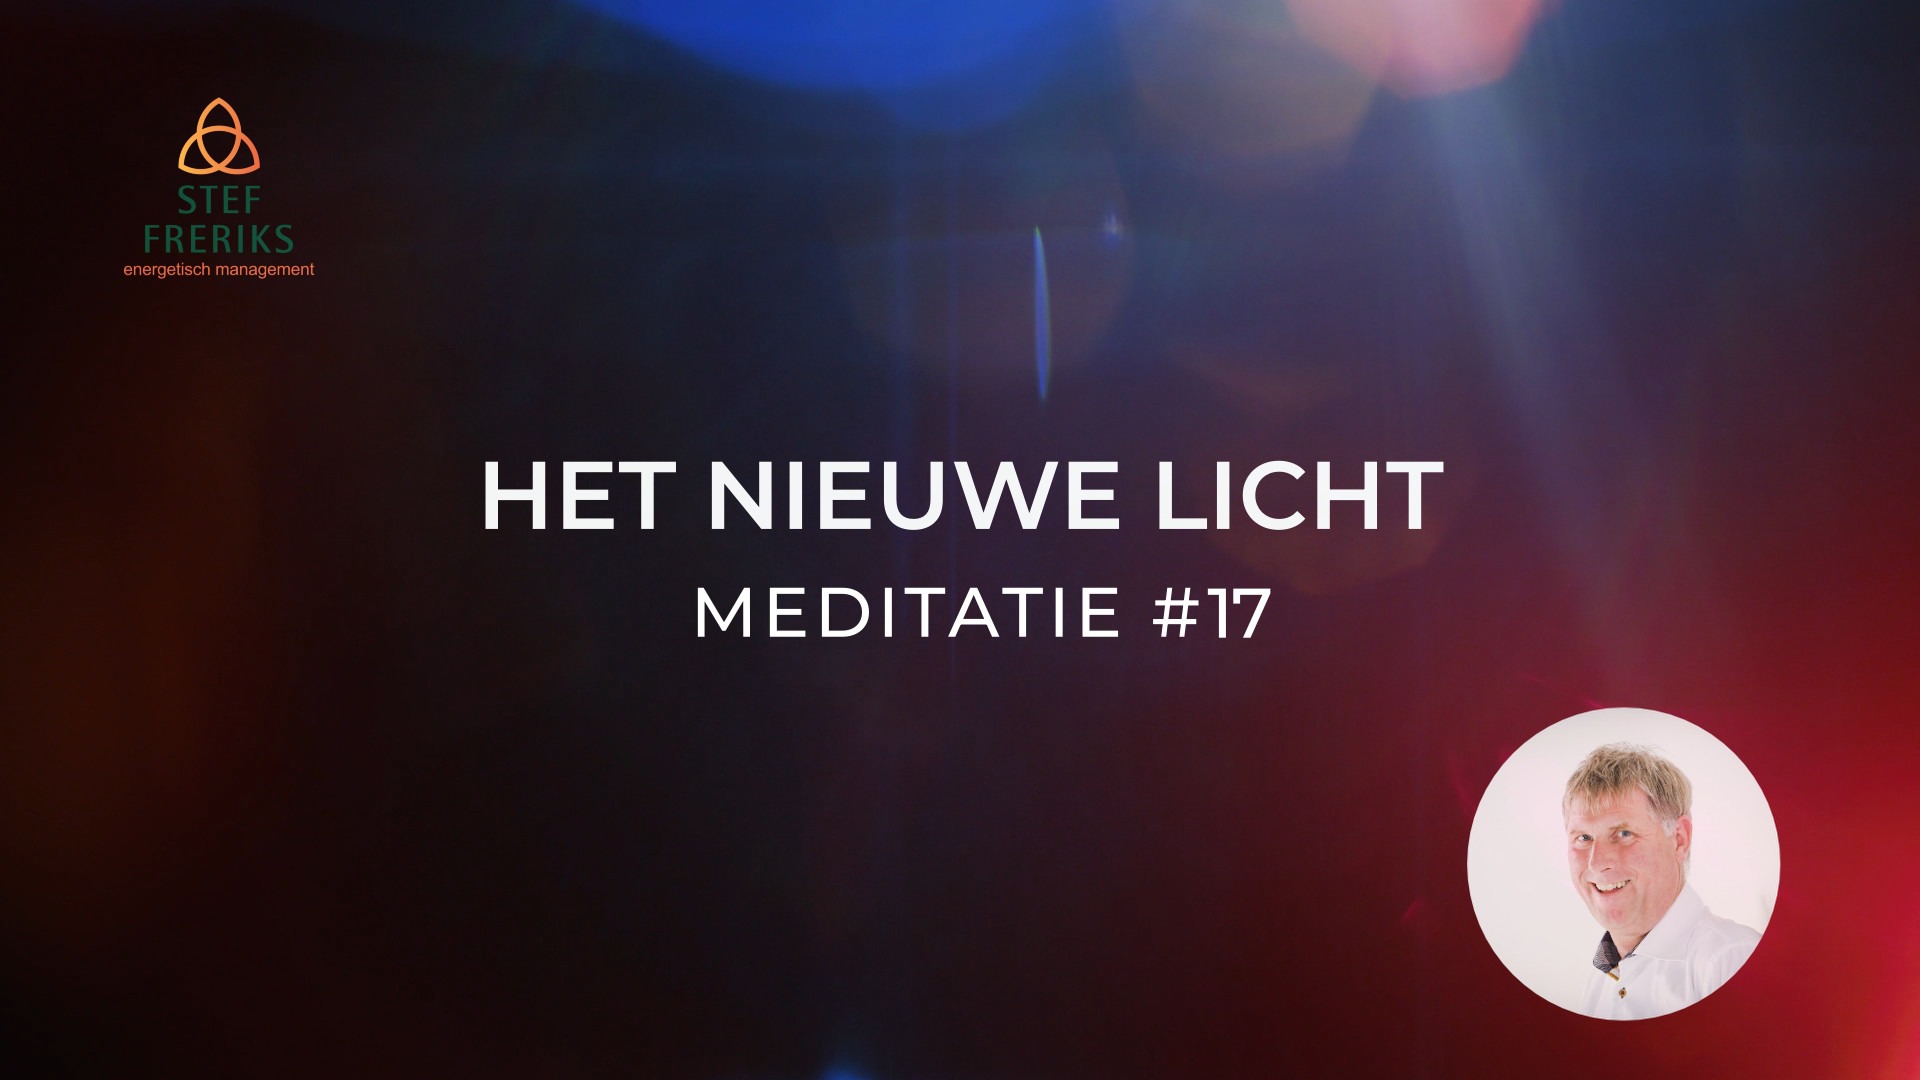 Meditatie #17 uit de serie Het Nieuwe Licht: Kosmische wet 1 - Kosmische waarheid